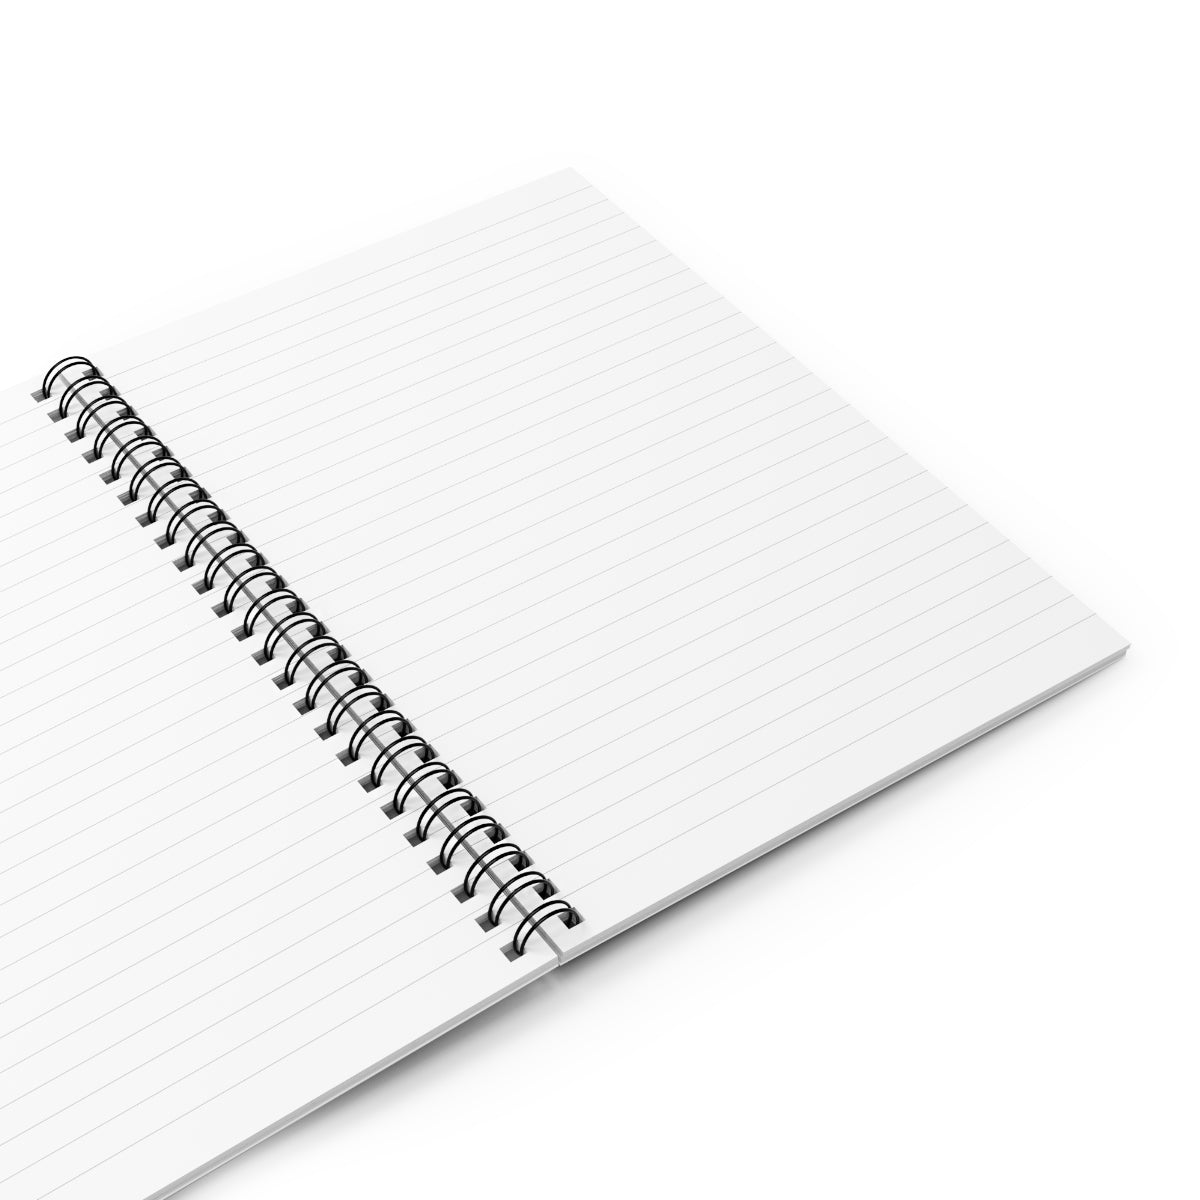 Behavior Analyst Spiral Notebook - Ruled Line